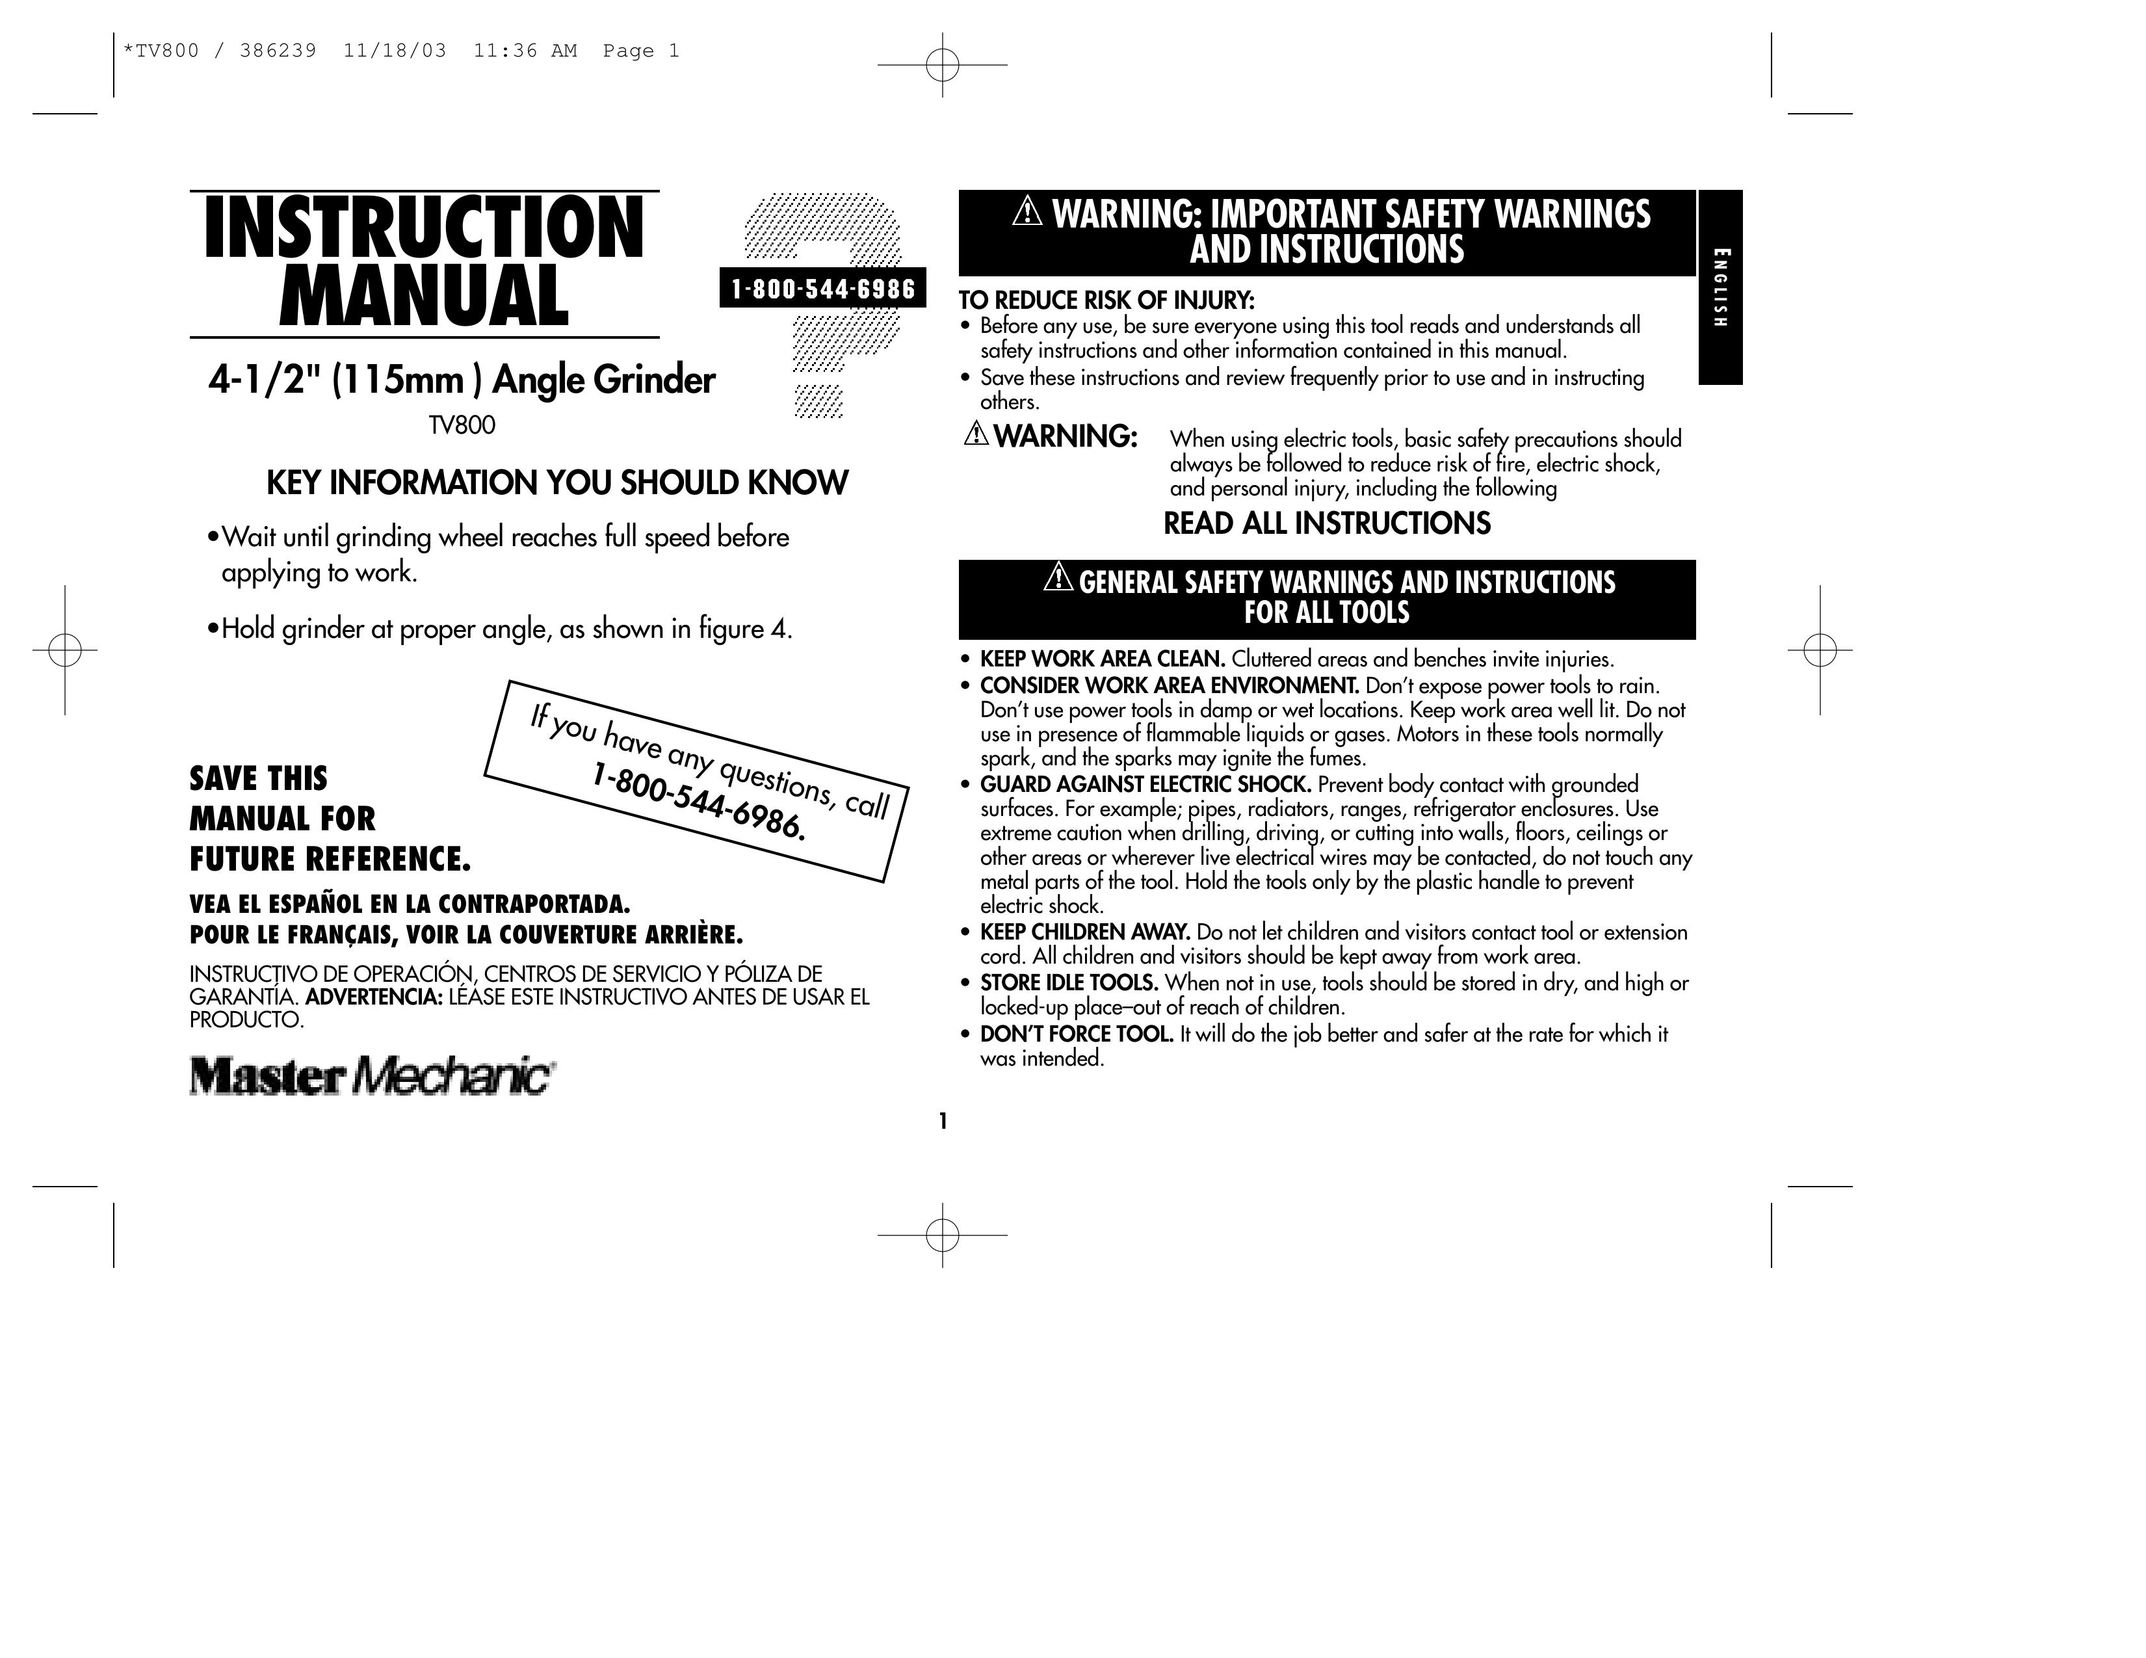 Black & Decker 386239 Grinder User Manual